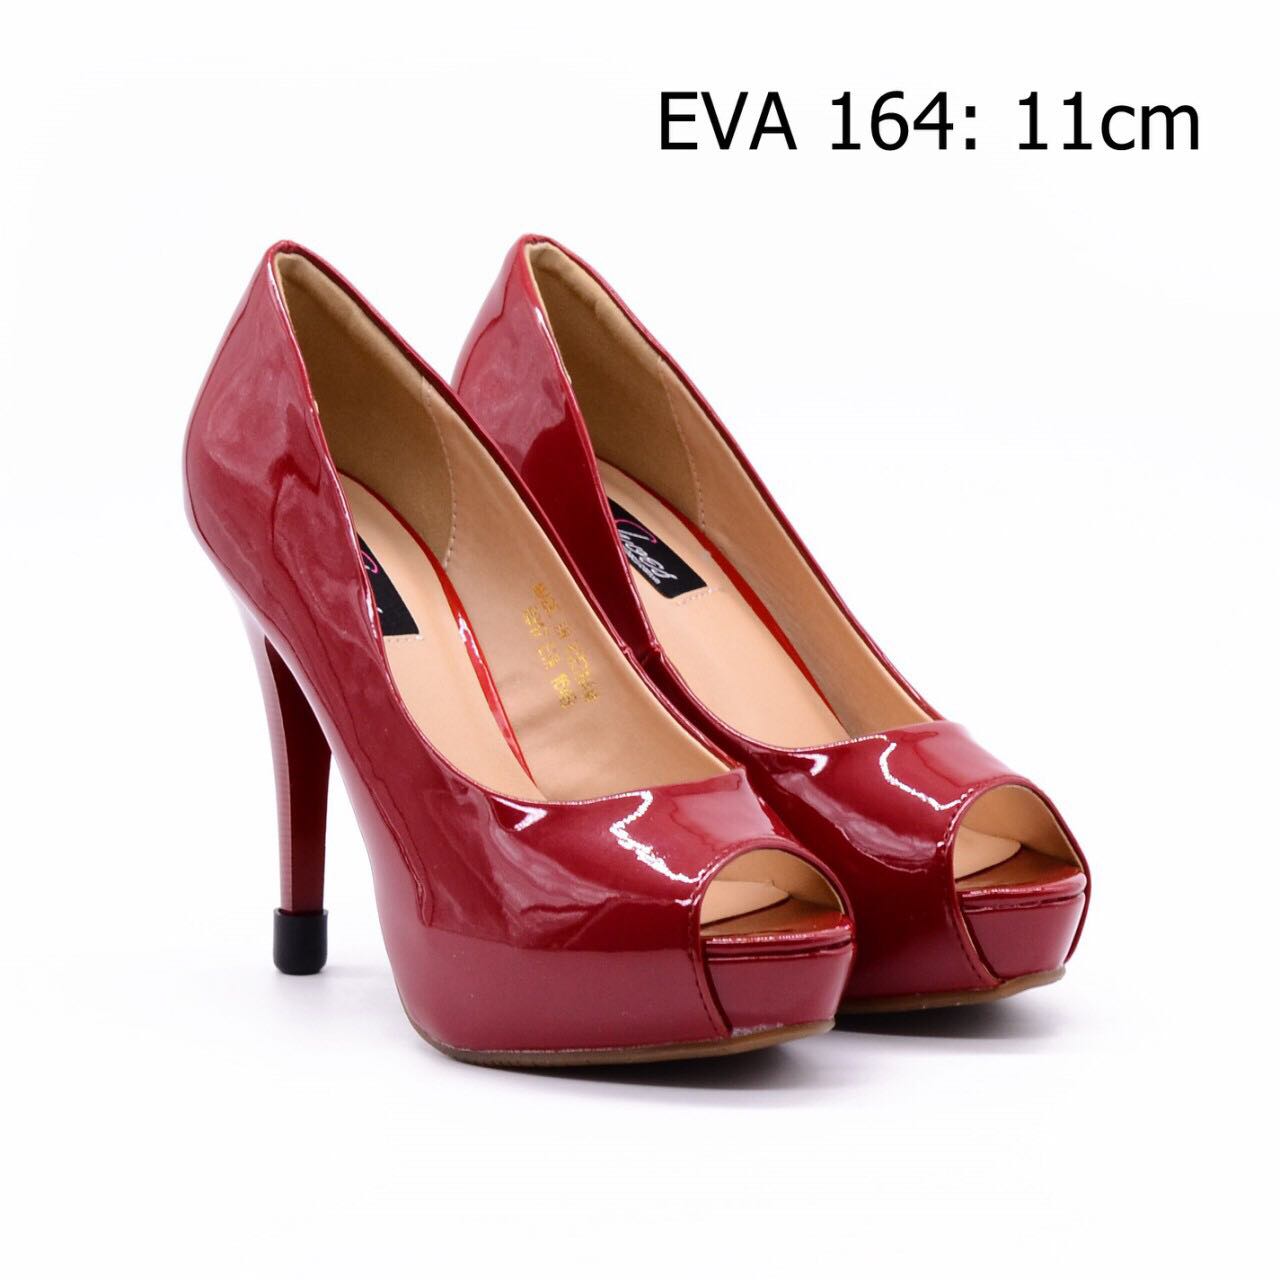 Giày hở mũi EVA164 cao 11cm chất liệu da bóng mềm mại, quý phái.